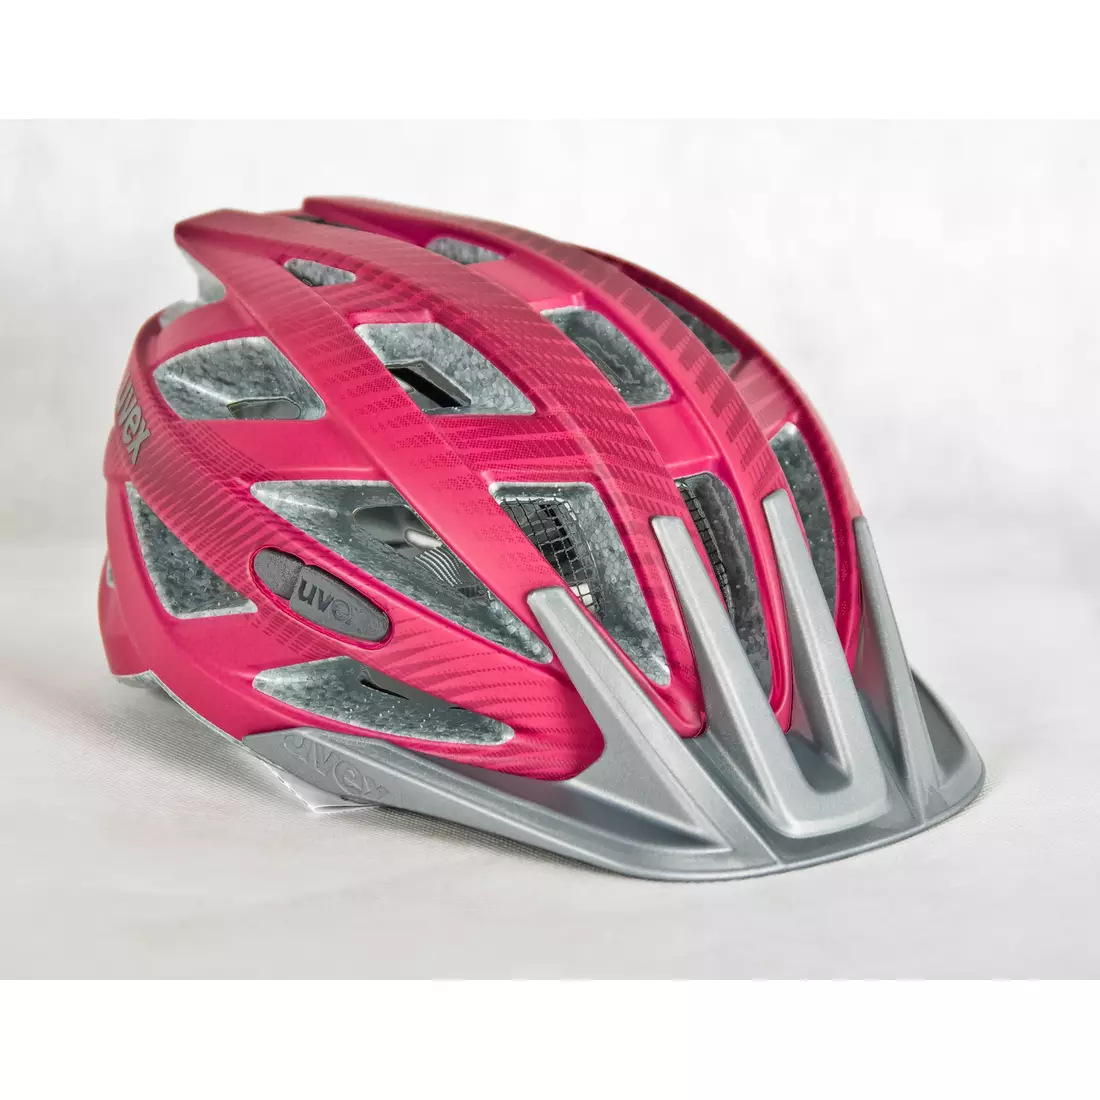 UVEX I-VO CC bicycle helmet 41042317 dark pink